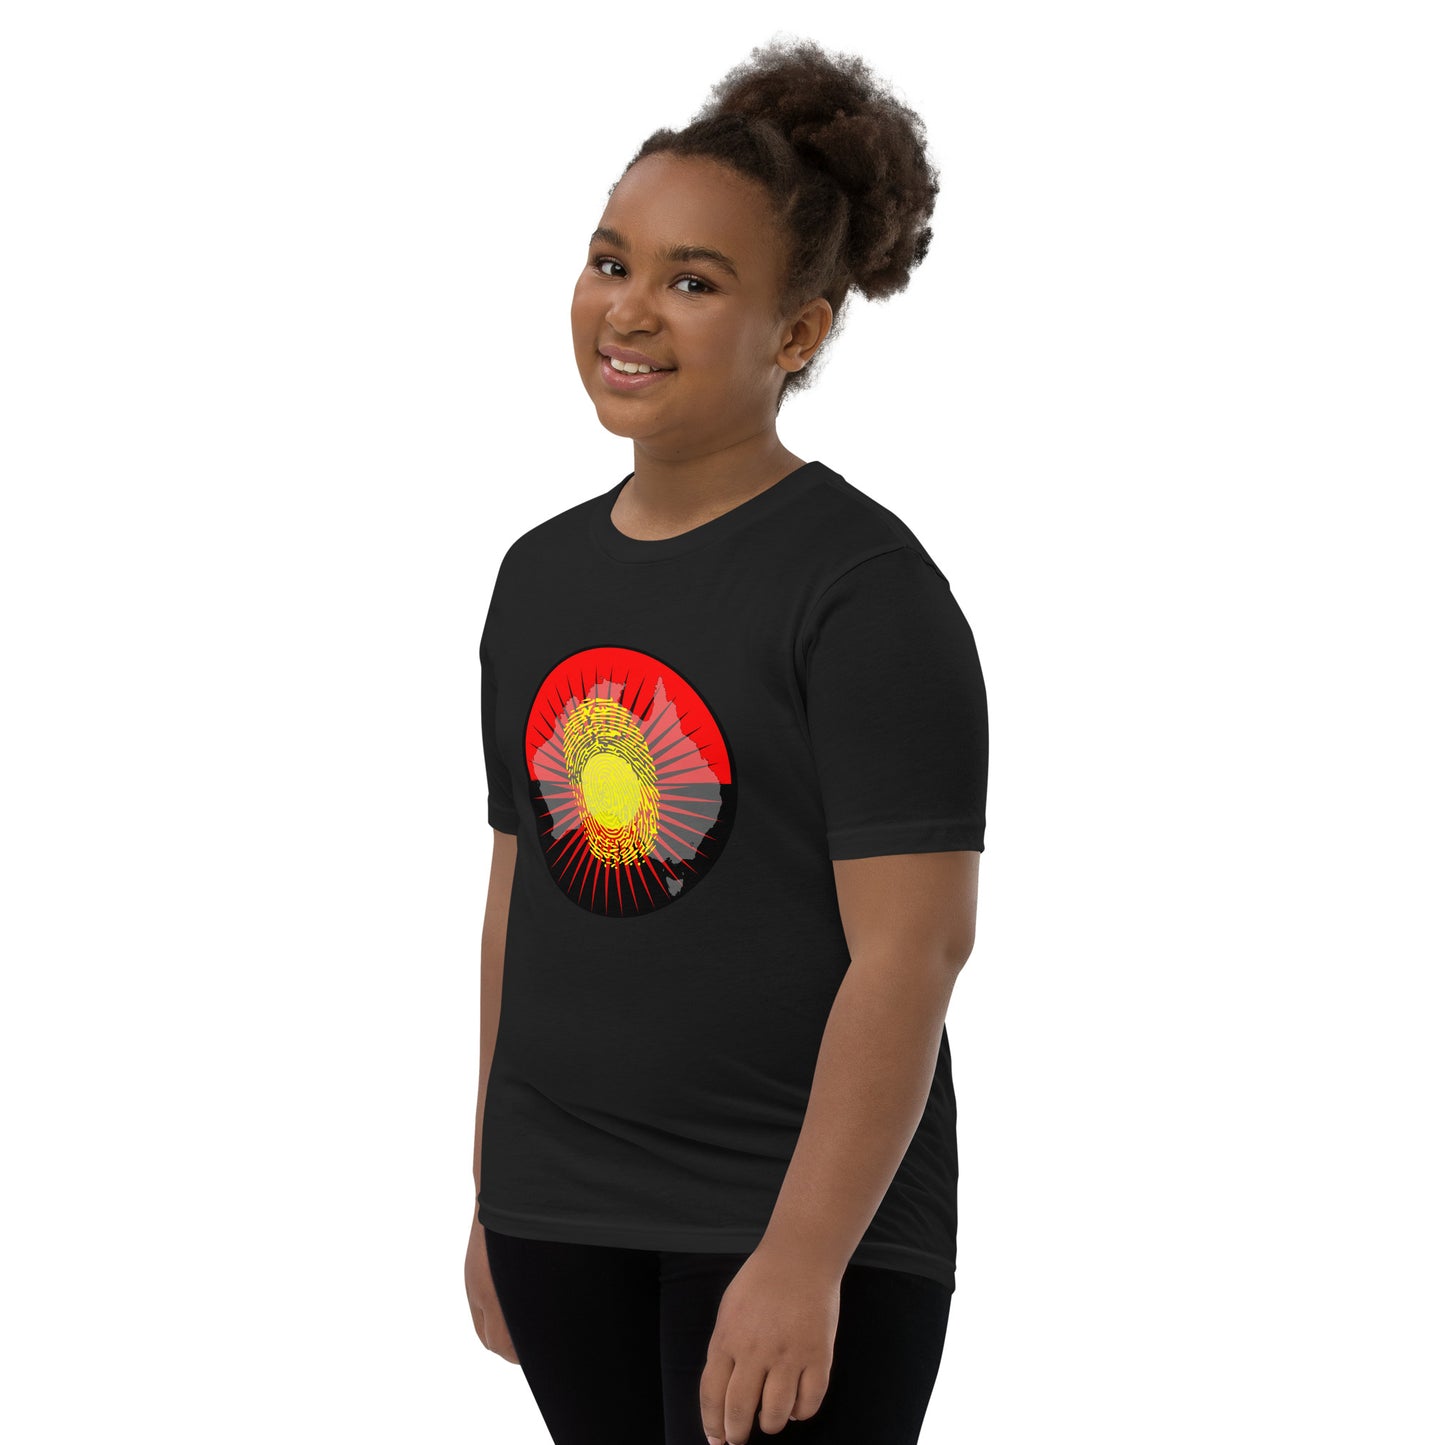 Aboriginal Australia Identity Youth Unisex Short Sleeve T-Shirt